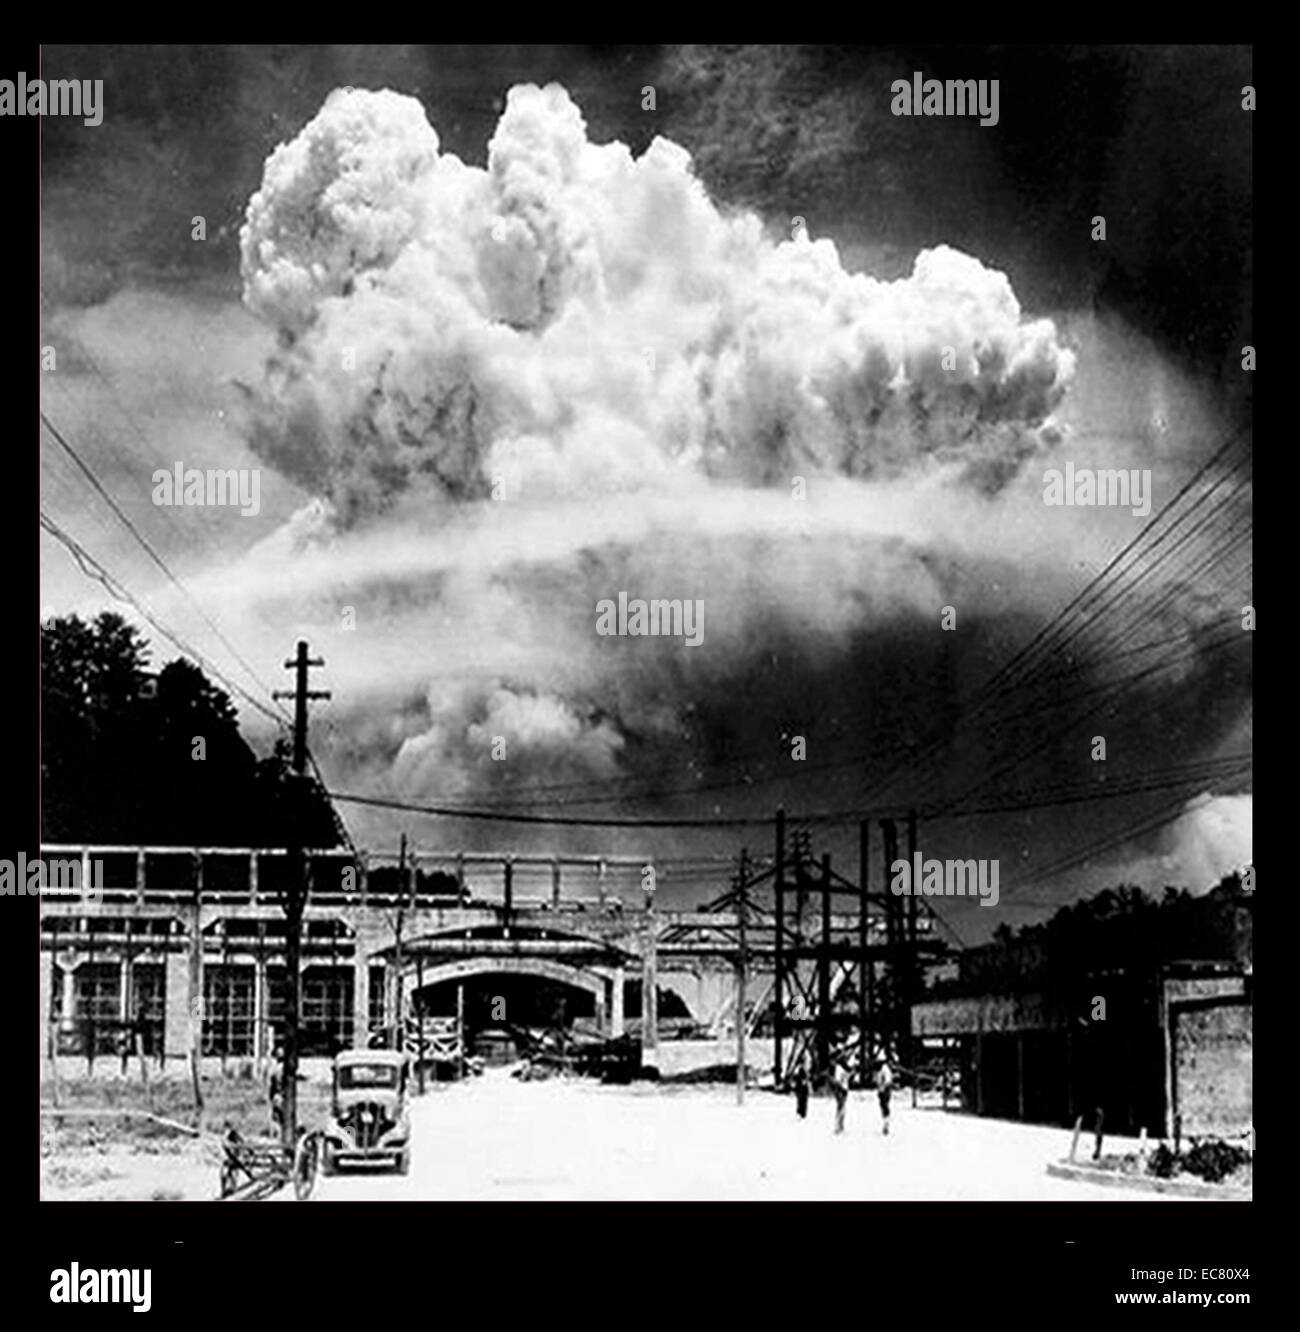 Die Bombardierung von Nagasaki. Die Stadt ist nur eine von zwei Atombombe Ziele in der Geschichte so weit. Unter dem Codenamen "Fat Man", die Bombe 40.000 sofort getötet und erreicht eine letzte Todesopfer von fast 74.000 und fast 75.000 Verletzten. Obwohl mächtiger als die 'Little Boy' Bombe, die auf Hiroshima, Nagasaki in unwegsamem Gelände fallengelassen wurde, bedeutete der Schaden reduziert. Stockfoto